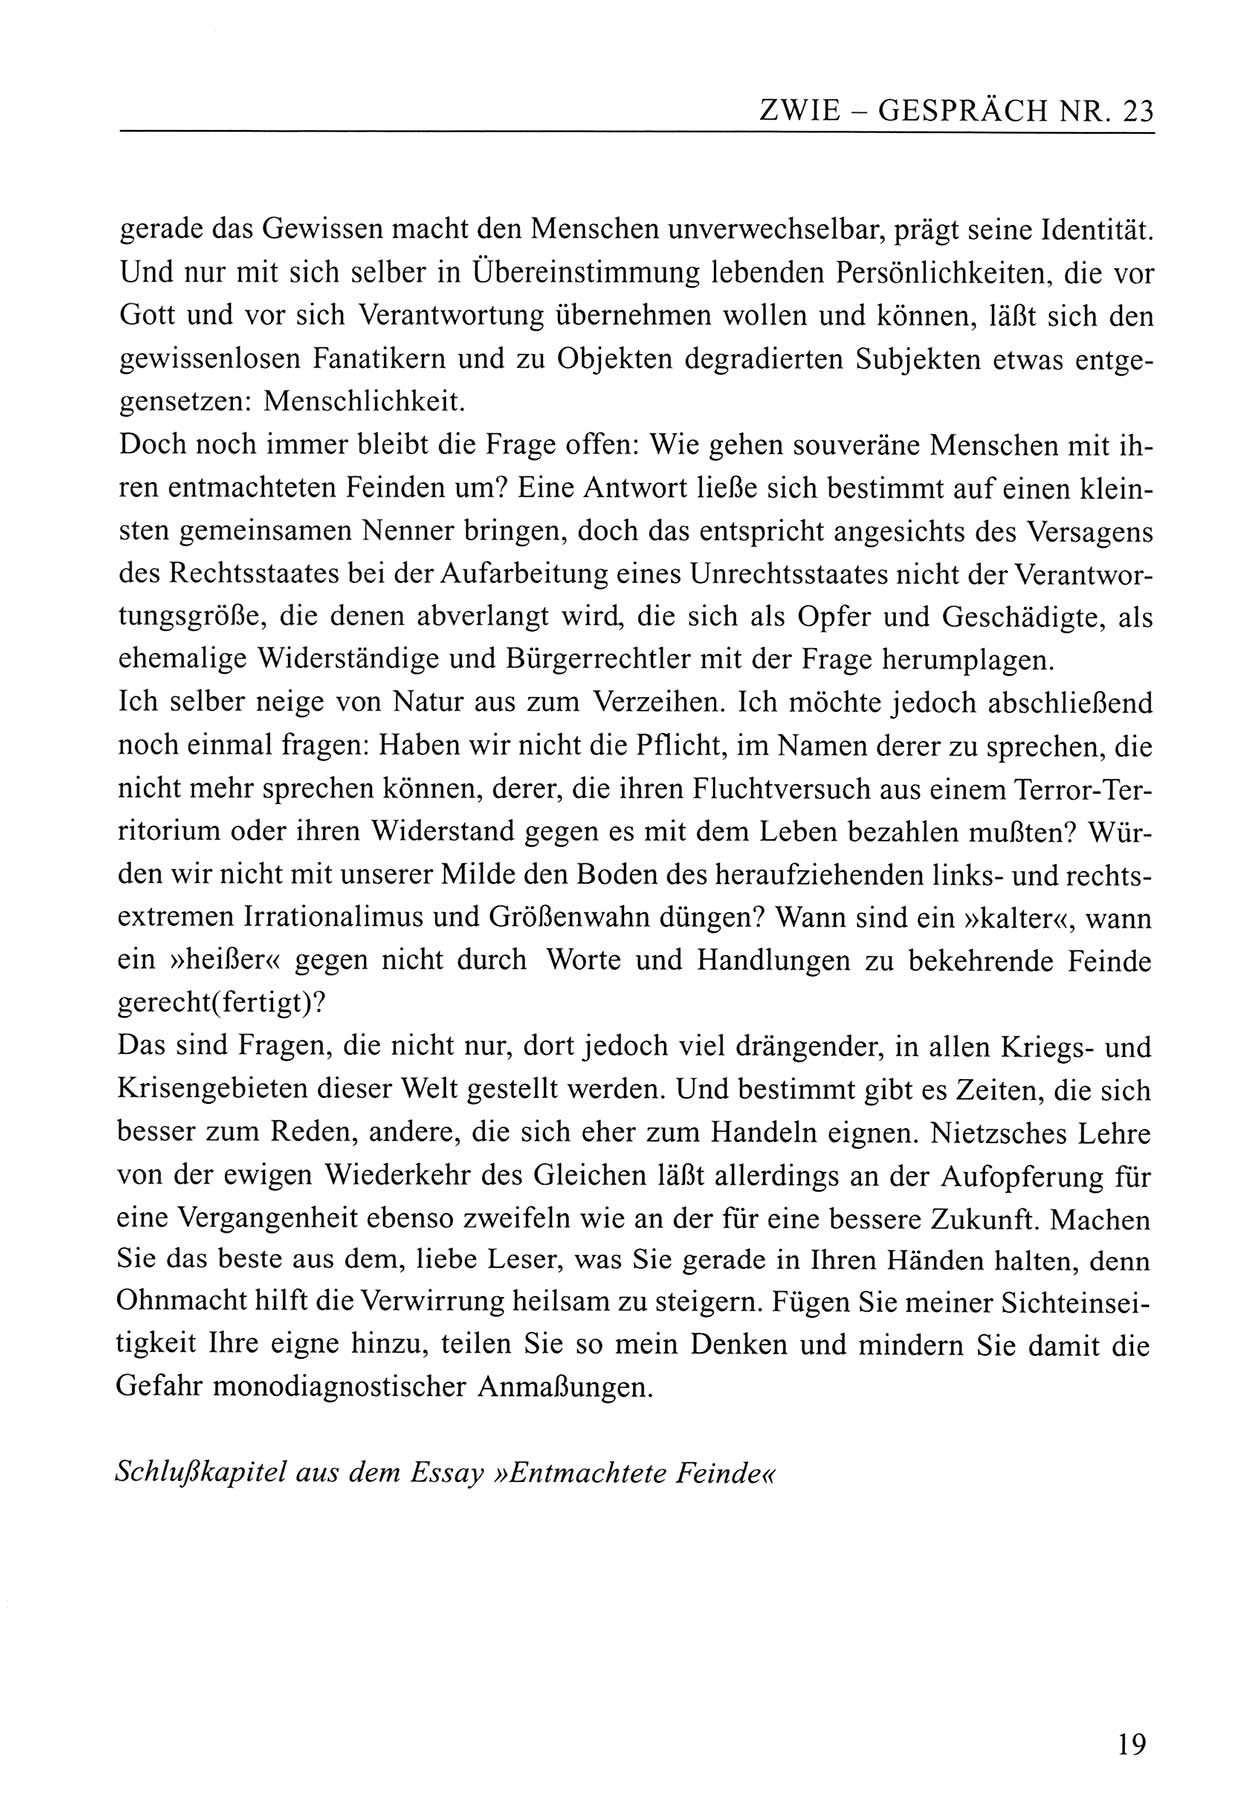 Zwie-Gespräch, Beiträge zum Umgang mit der Staatssicherheits-Vergangenheit [Deutsche Demokratische Republik (DDR)], Ausgabe Nr. 23, Berlin 1994, Seite 19 (Zwie-Gespr. Ausg. 23 1994, S. 19)